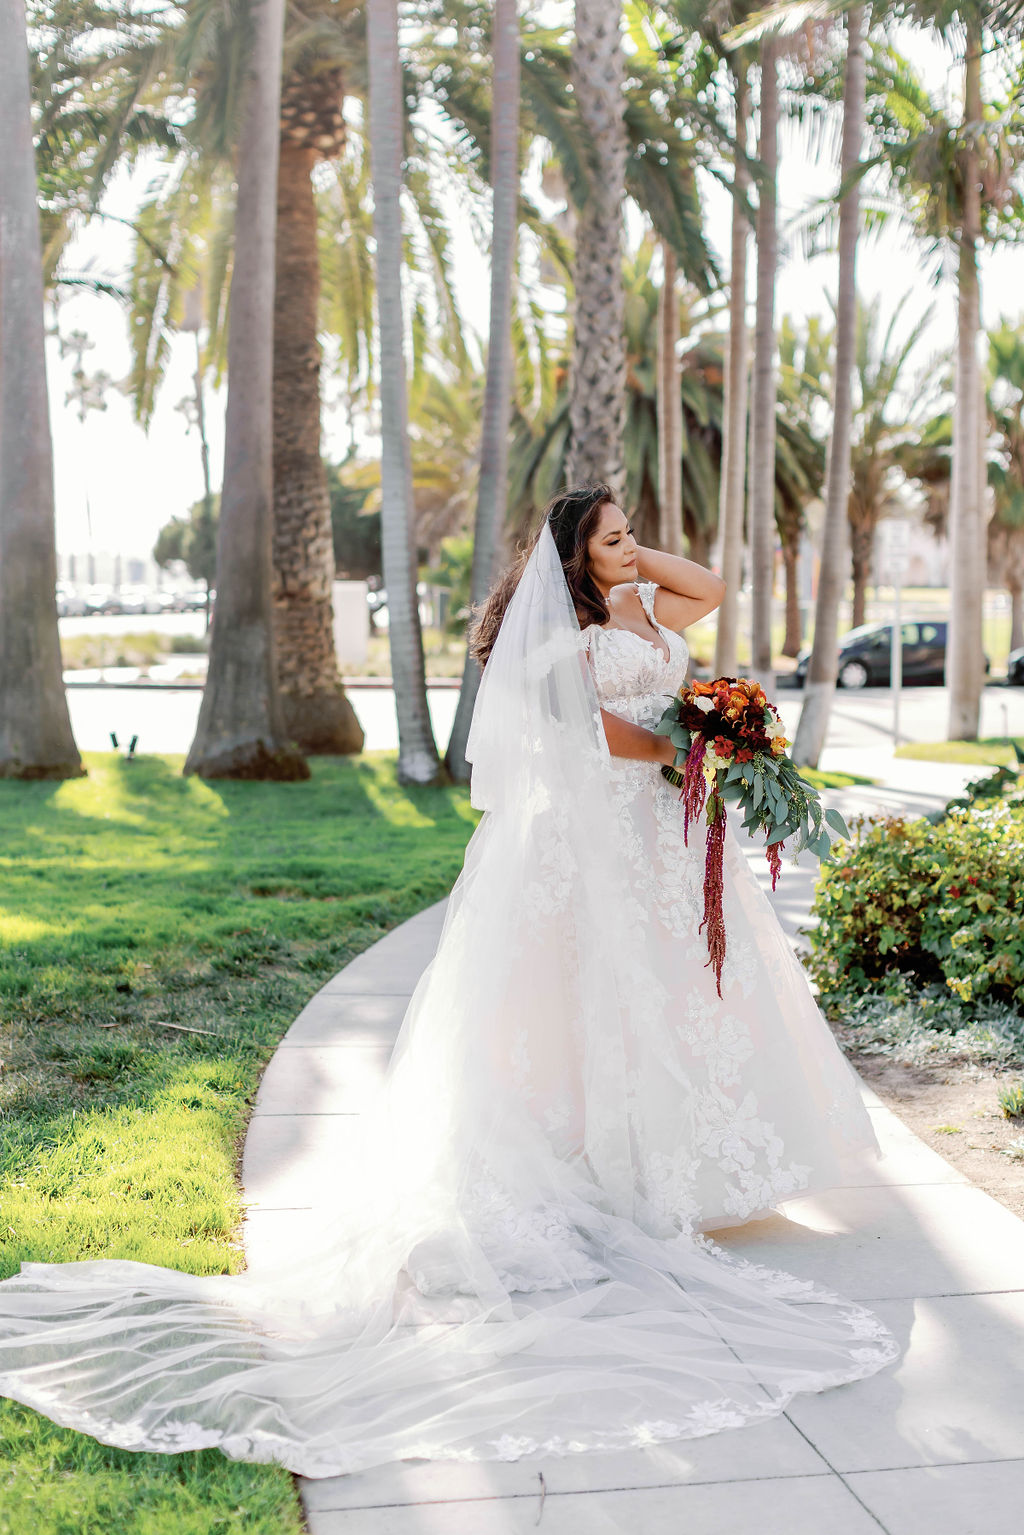 Bridal portrait at Mission Santa Barbara wedding | Photo by Sarah Block Photography